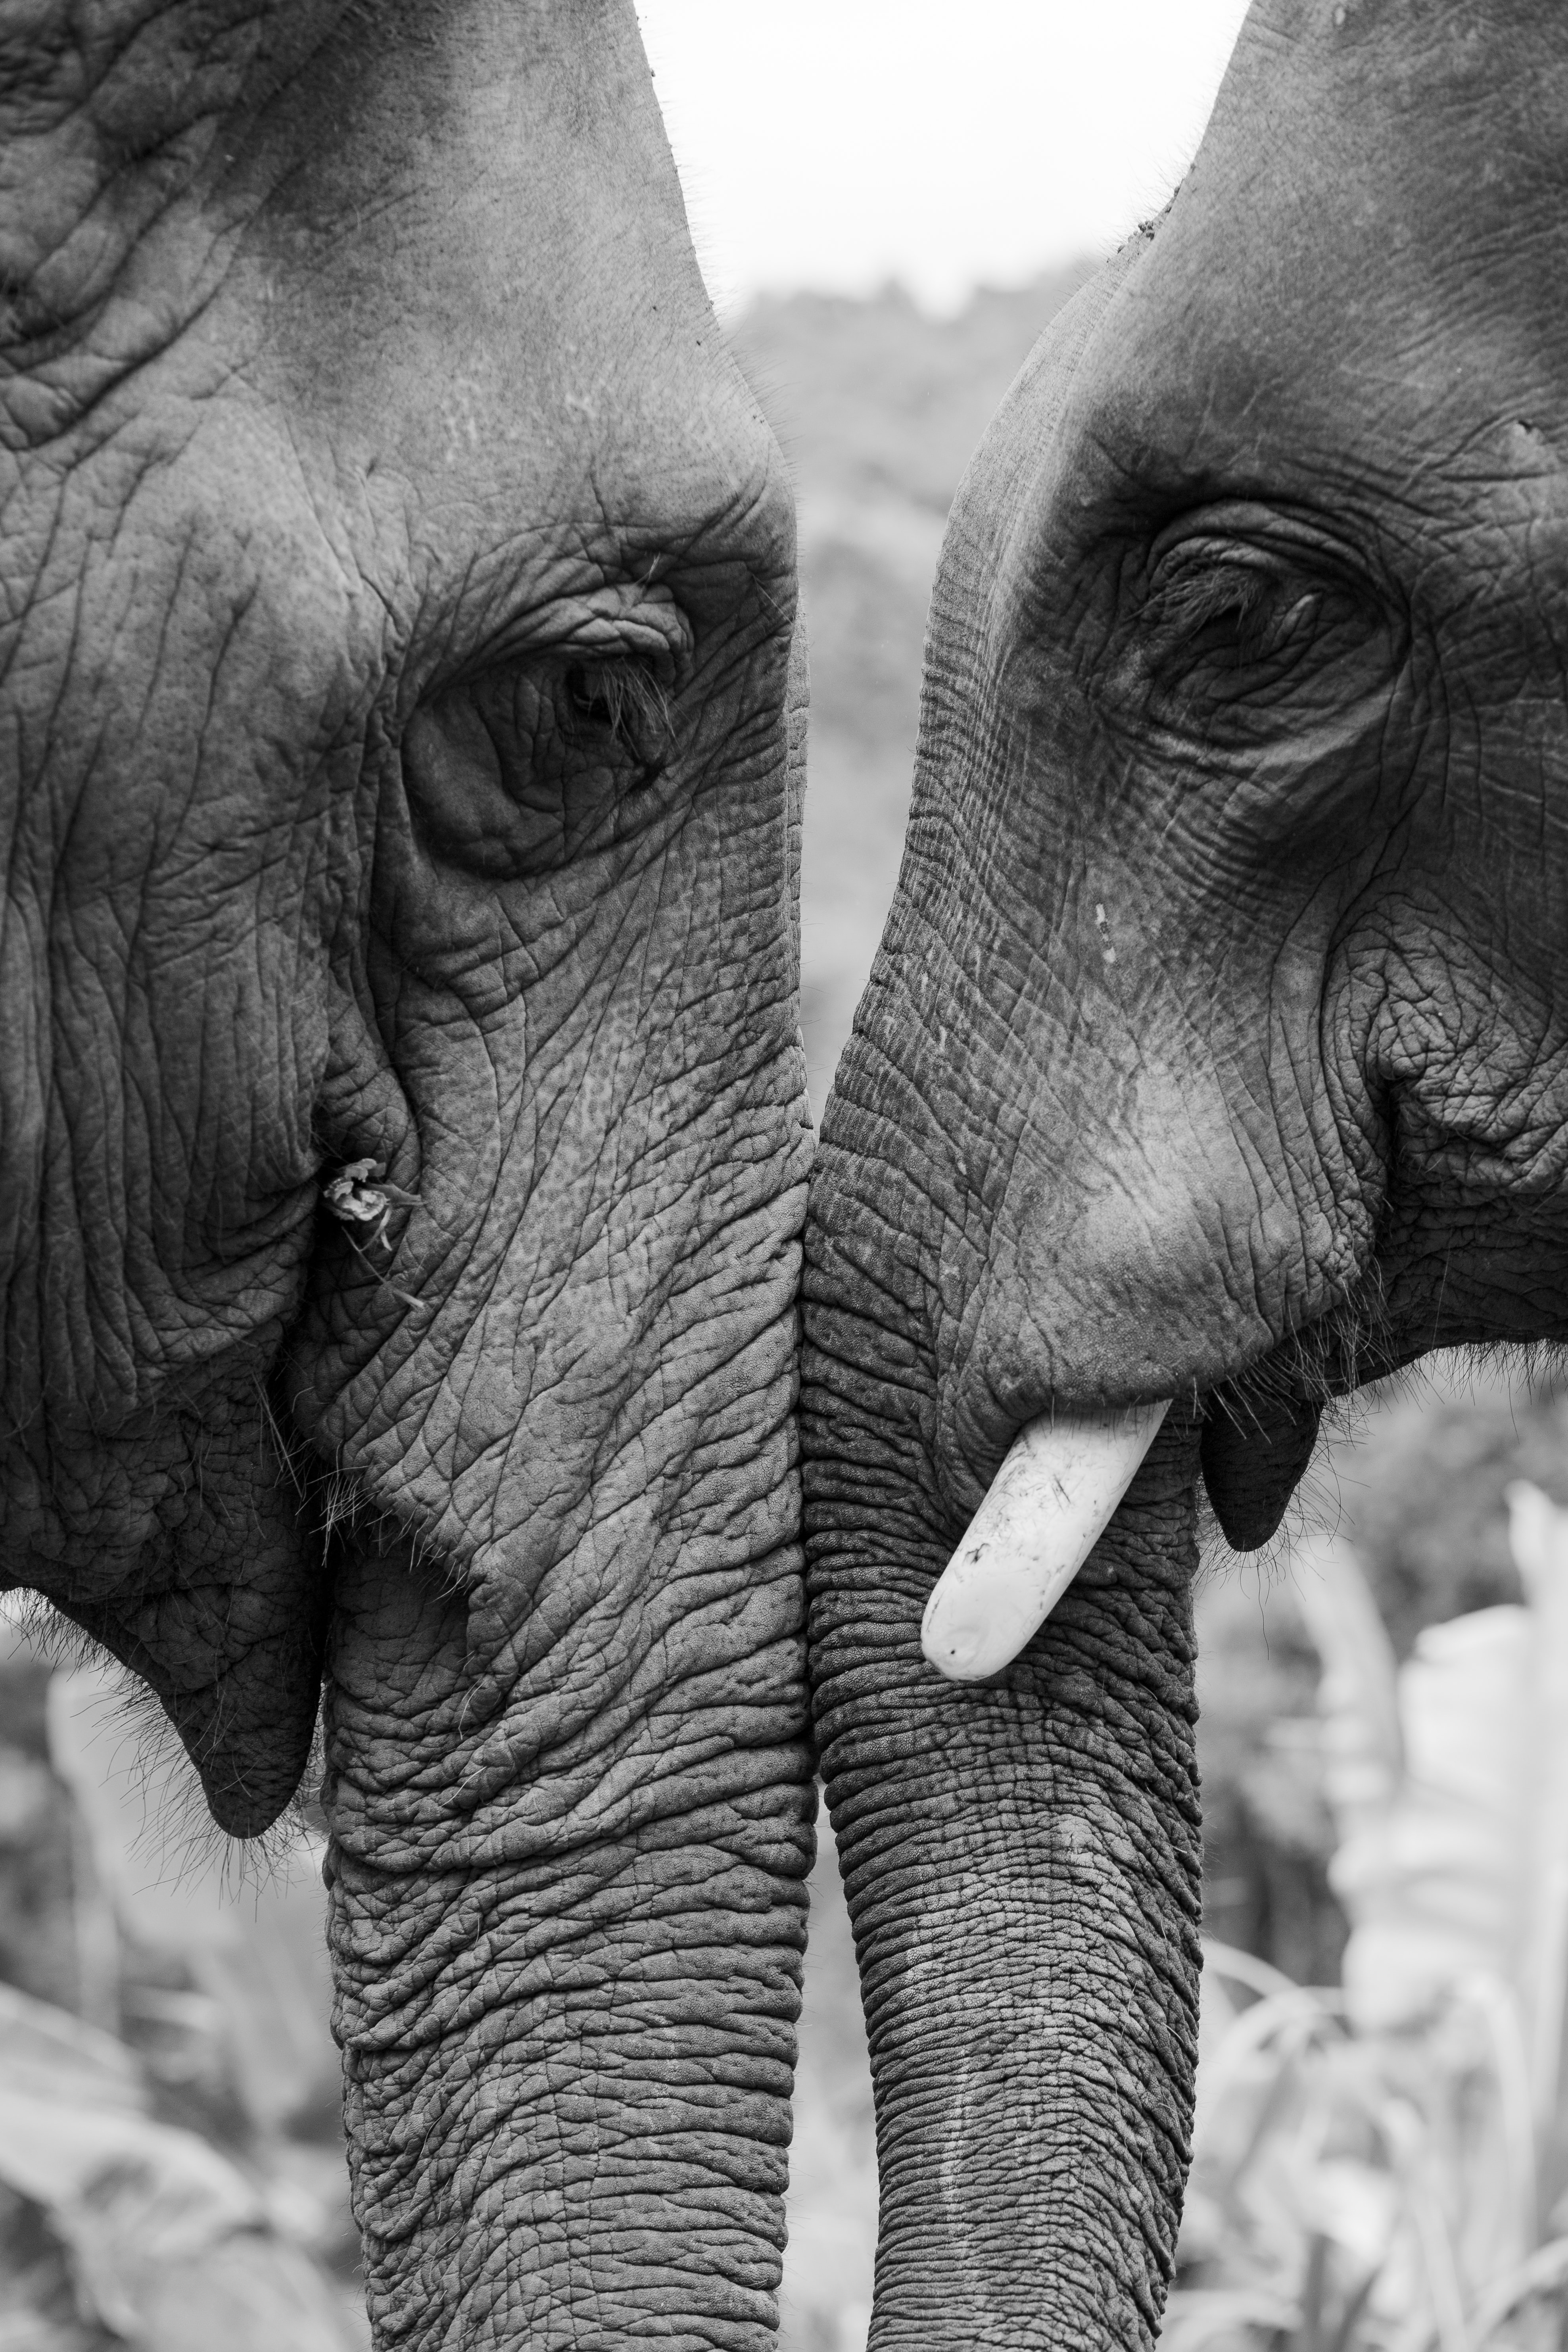 97726 descargar imagen bw, elefantes, animales, amor, chb: fondos de pantalla y protectores de pantalla gratis